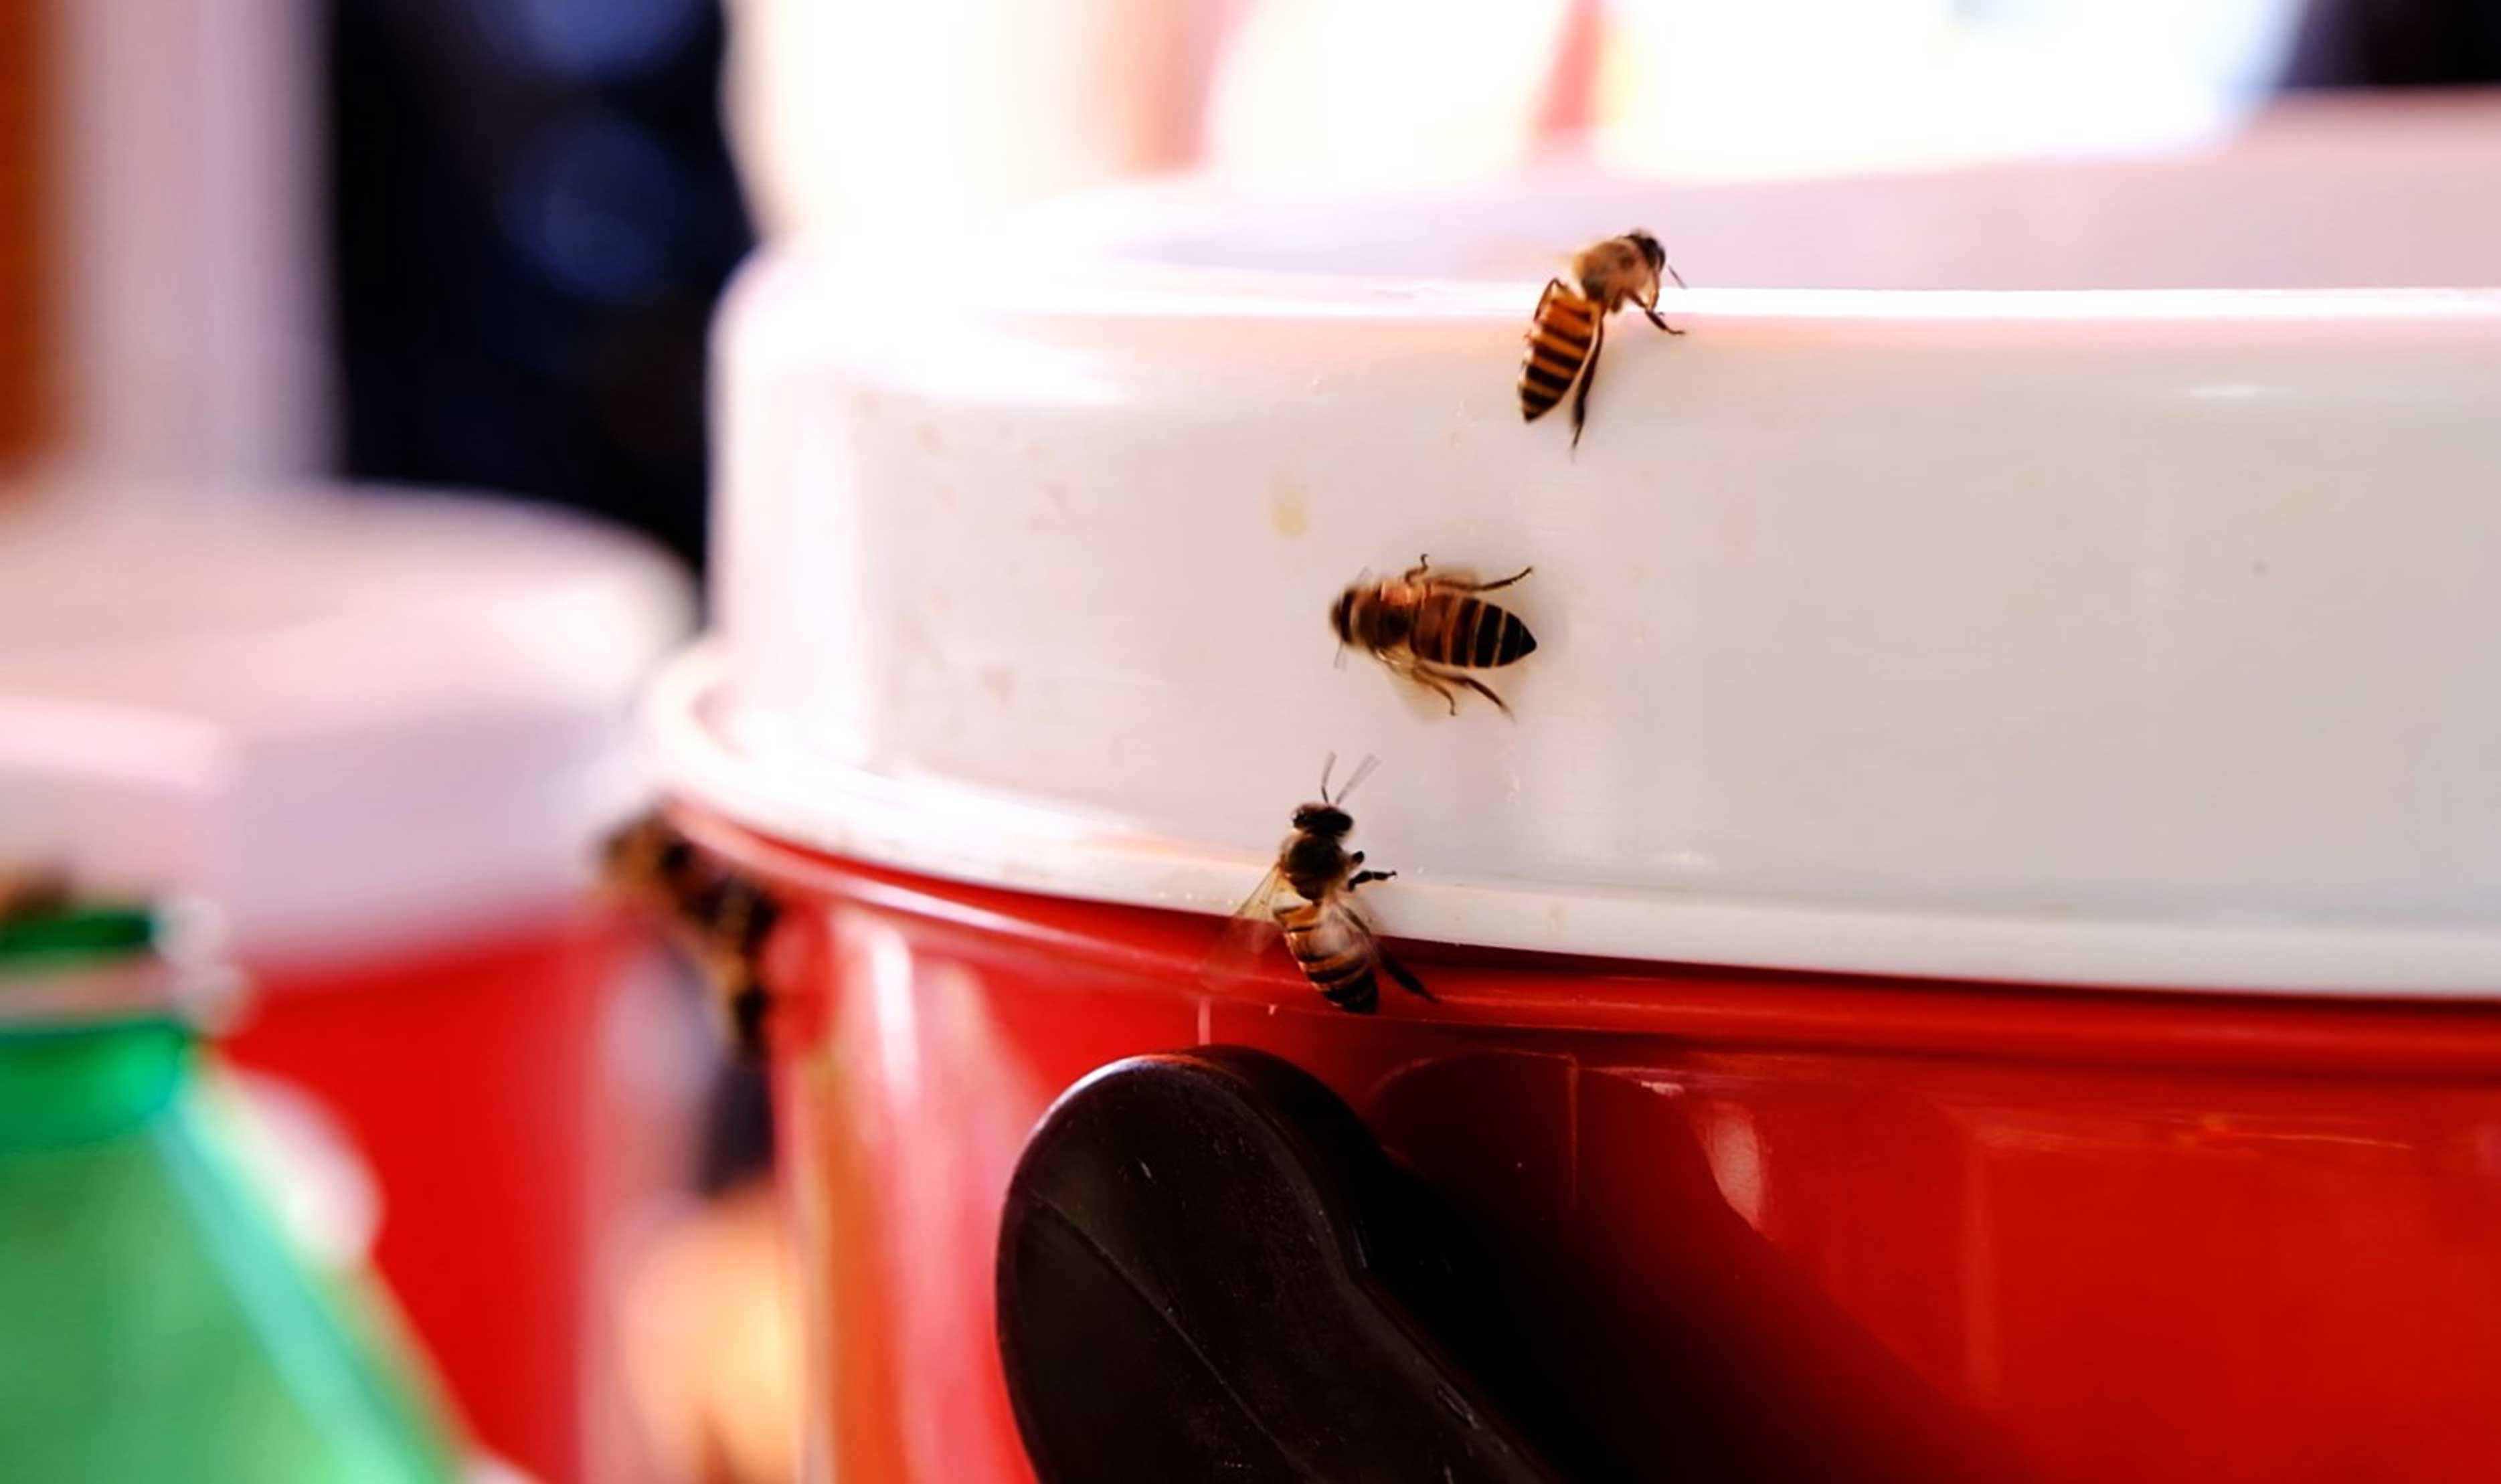 Con gái bà Sáu cho biết, hơn 40 năm nay, mỗi lần dọn hàng ra bán là ong lại bay đến hút sâm và không ít lần chị cũng bị đàn ong này chích.